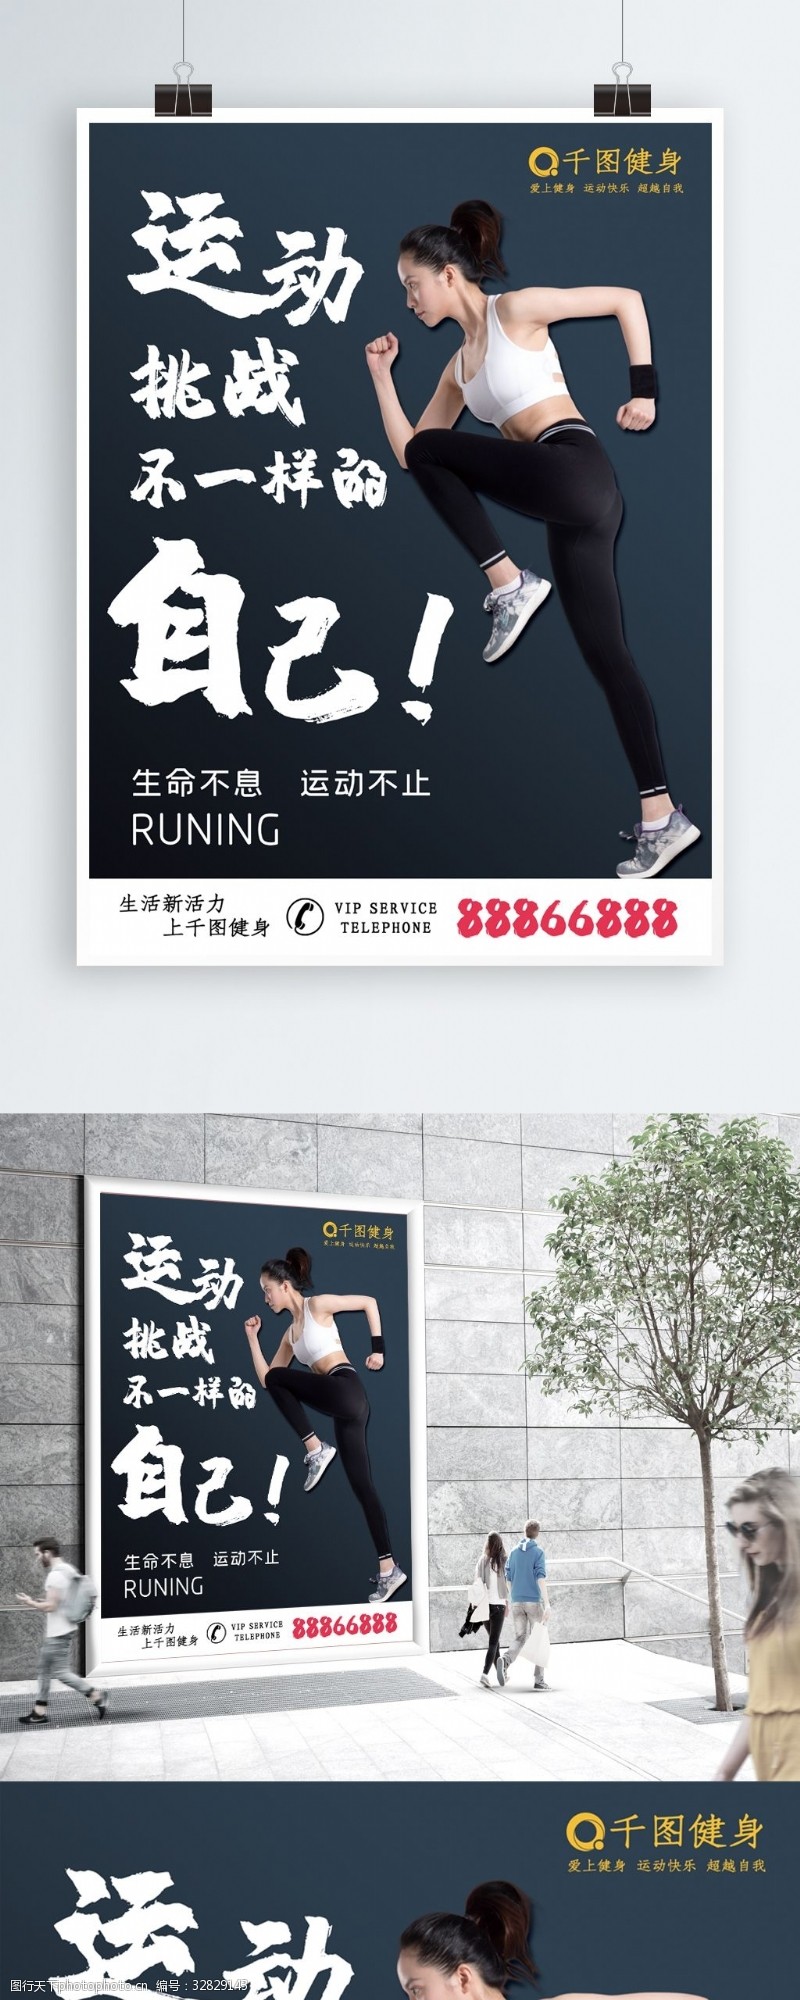 跑步全名运动健身海报